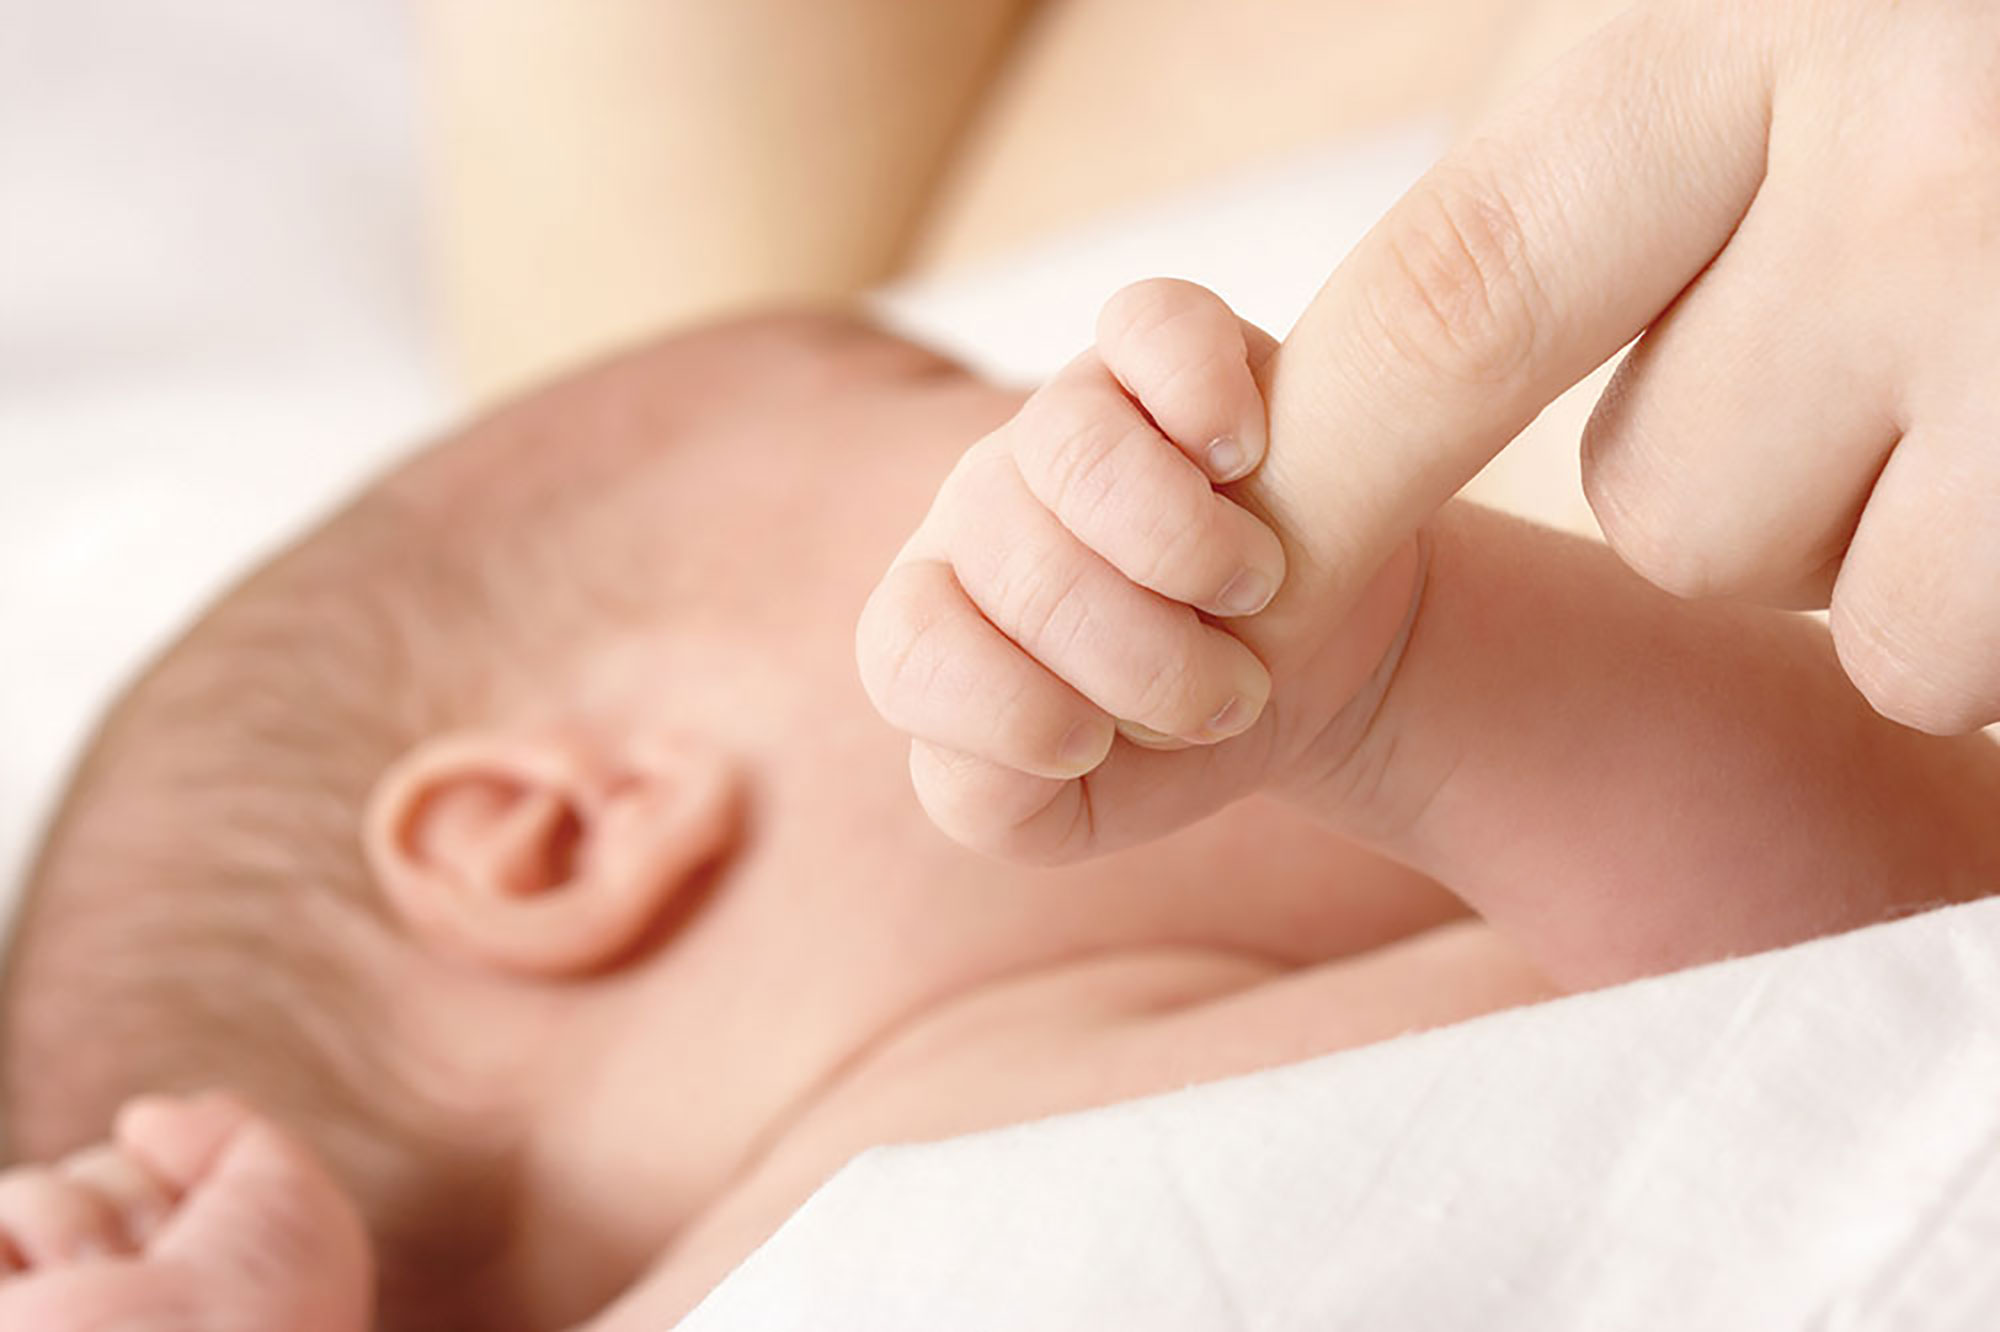 The ABC’s of Safe Infant Sleep